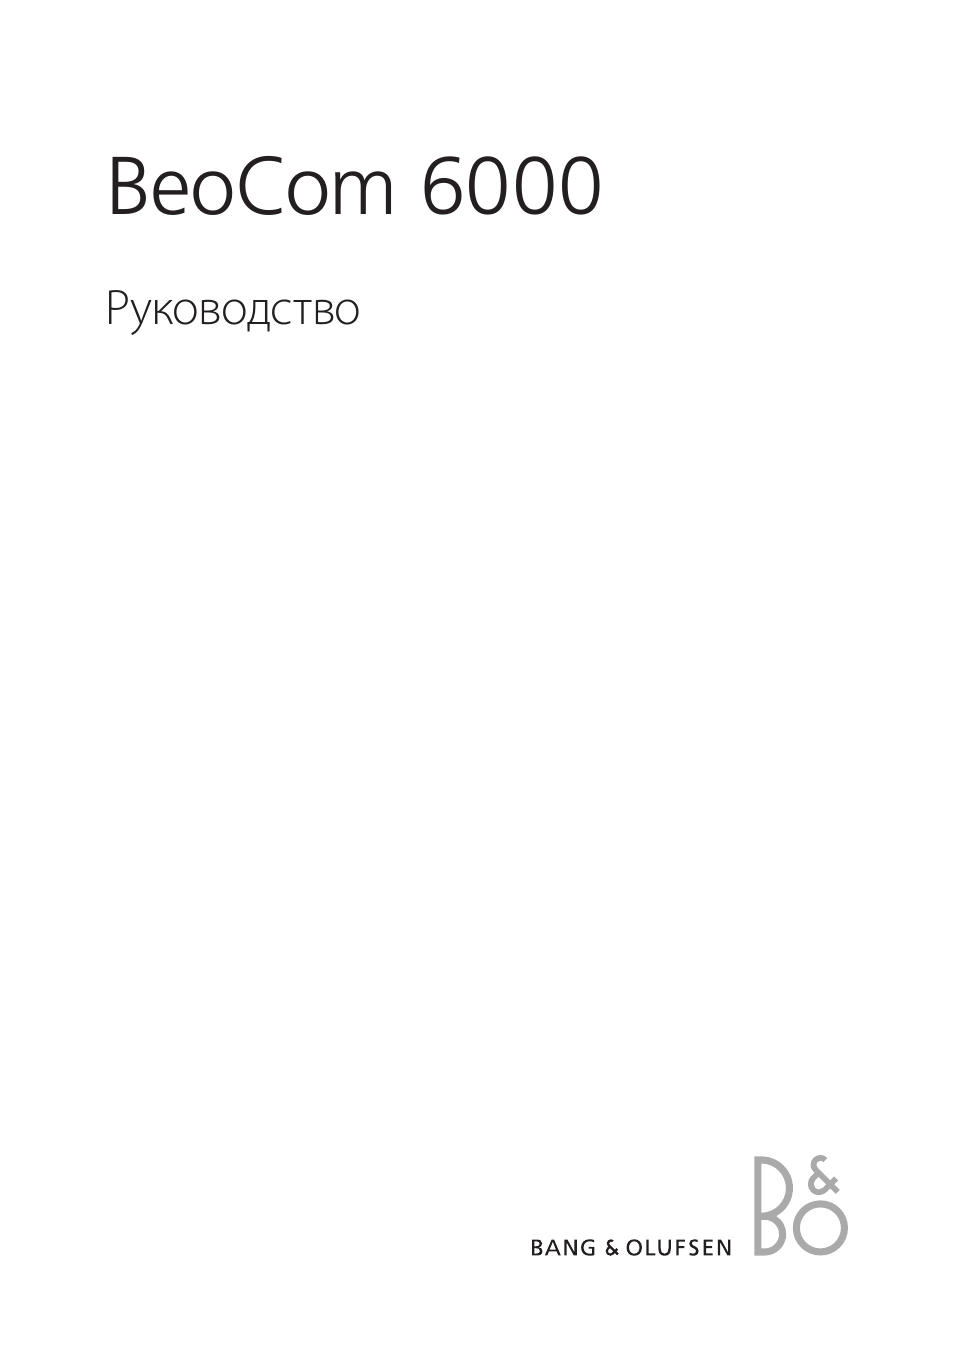 Инструкция по эксплуатации Bang & Olufsen BeoCom 6000 - User Guide | 56 страниц